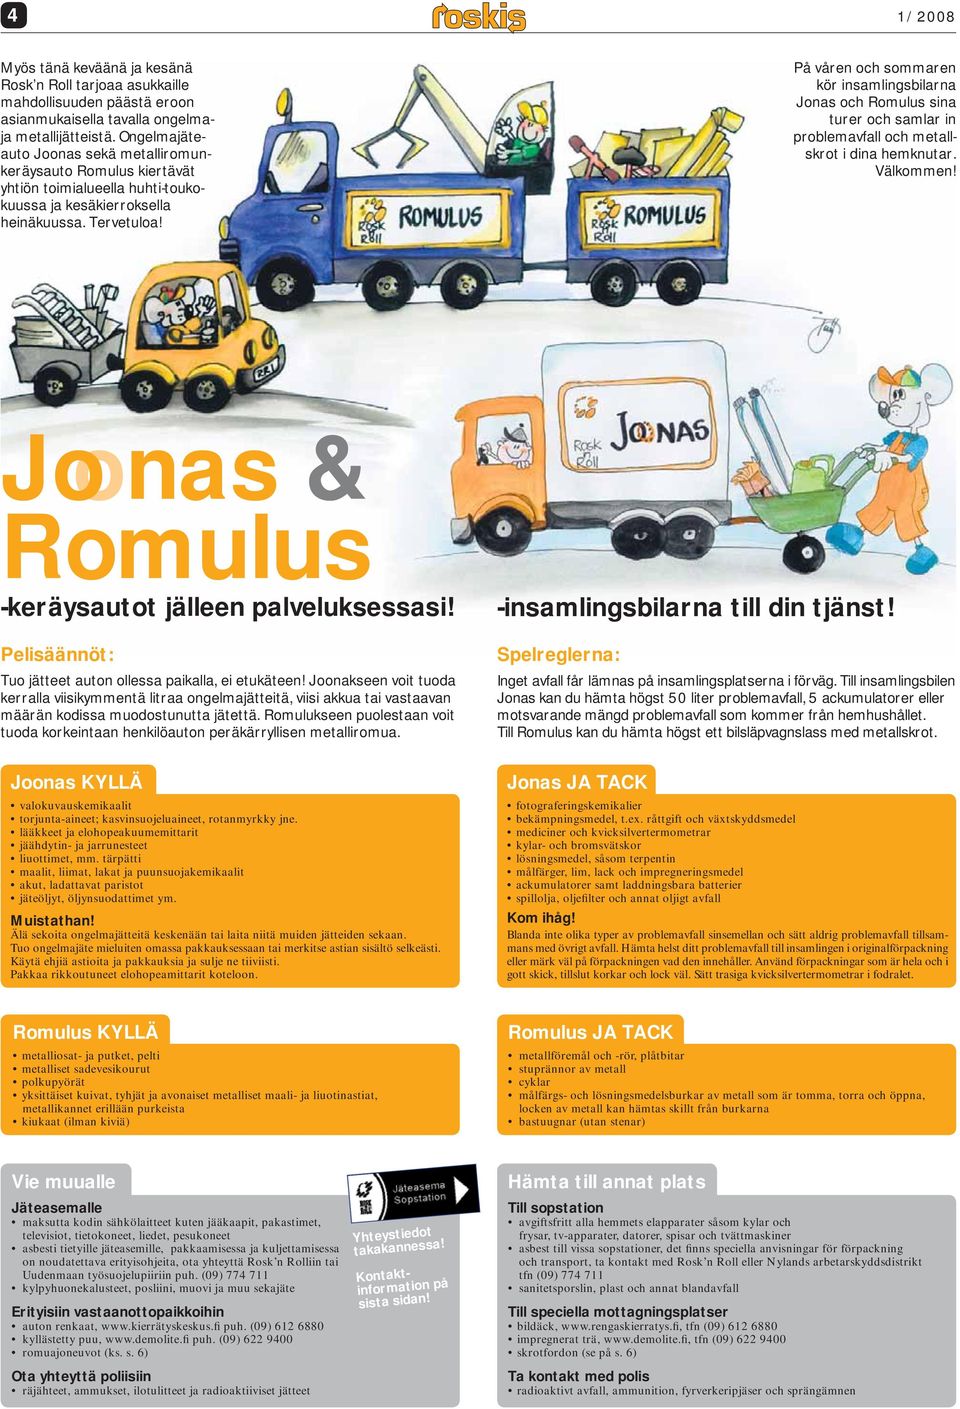 På våren och sommaren kör insamlingsbilarna Jonas och Romulus sina turer och samlar in problemavfall och metallskrot i dina hemknutar. Välkommen!